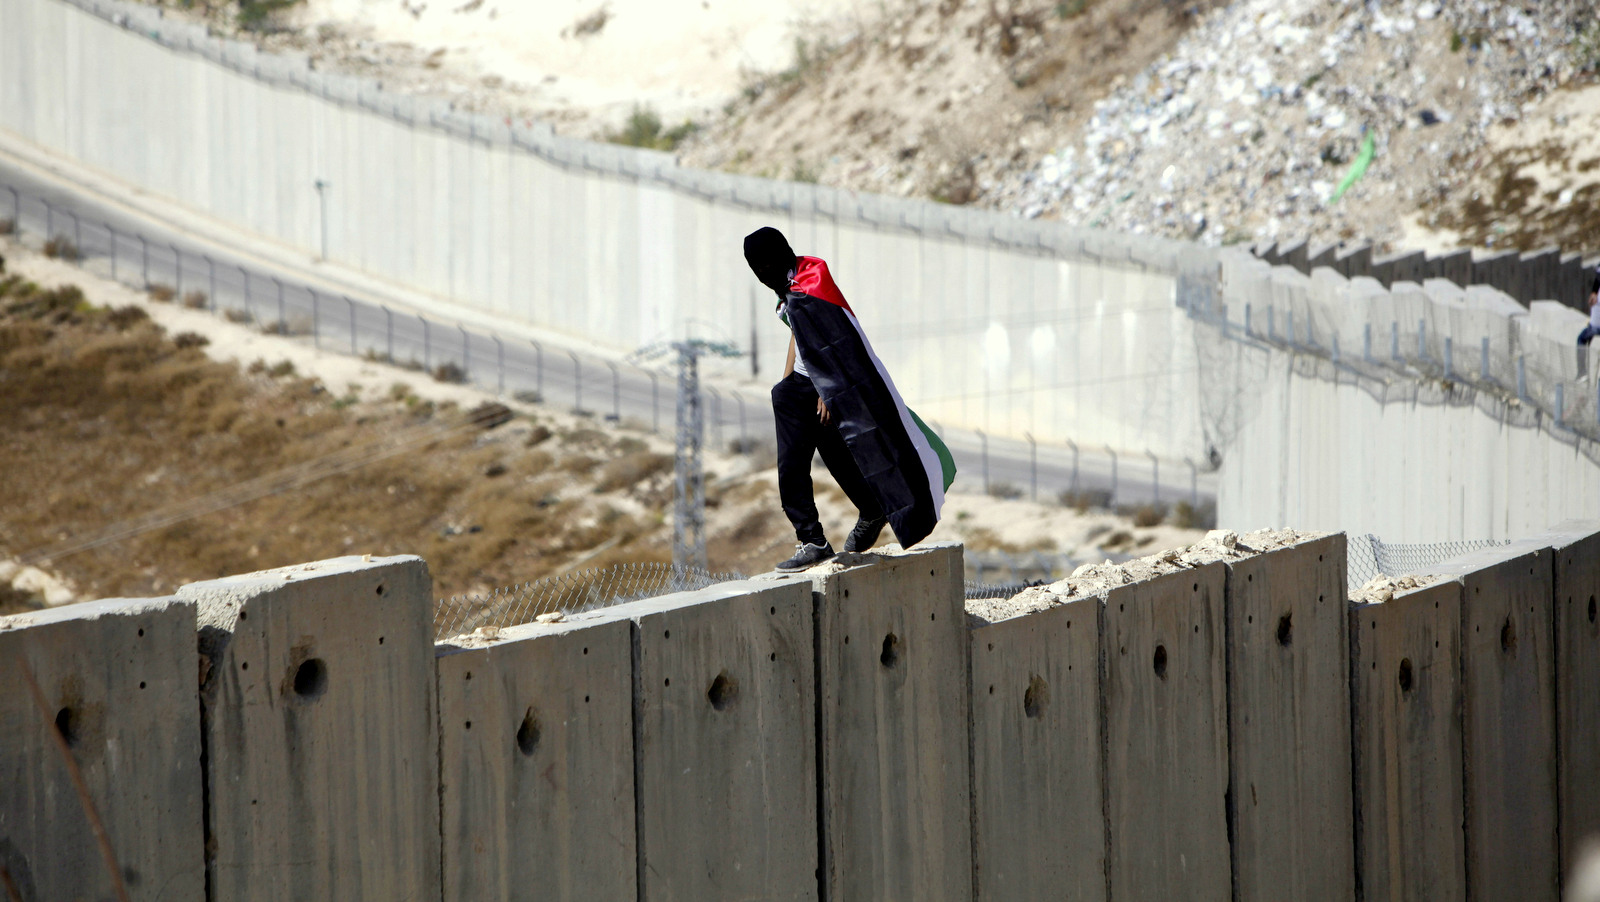 Студент, завернутый в палестинский флаг, посещает израильскую апартеидную стену между Западным берегом и Израилем в Абу-Диссе во время протеста в понедельник, 2 ноября 2015 года. (AP Photo / Mahmoud Illean)